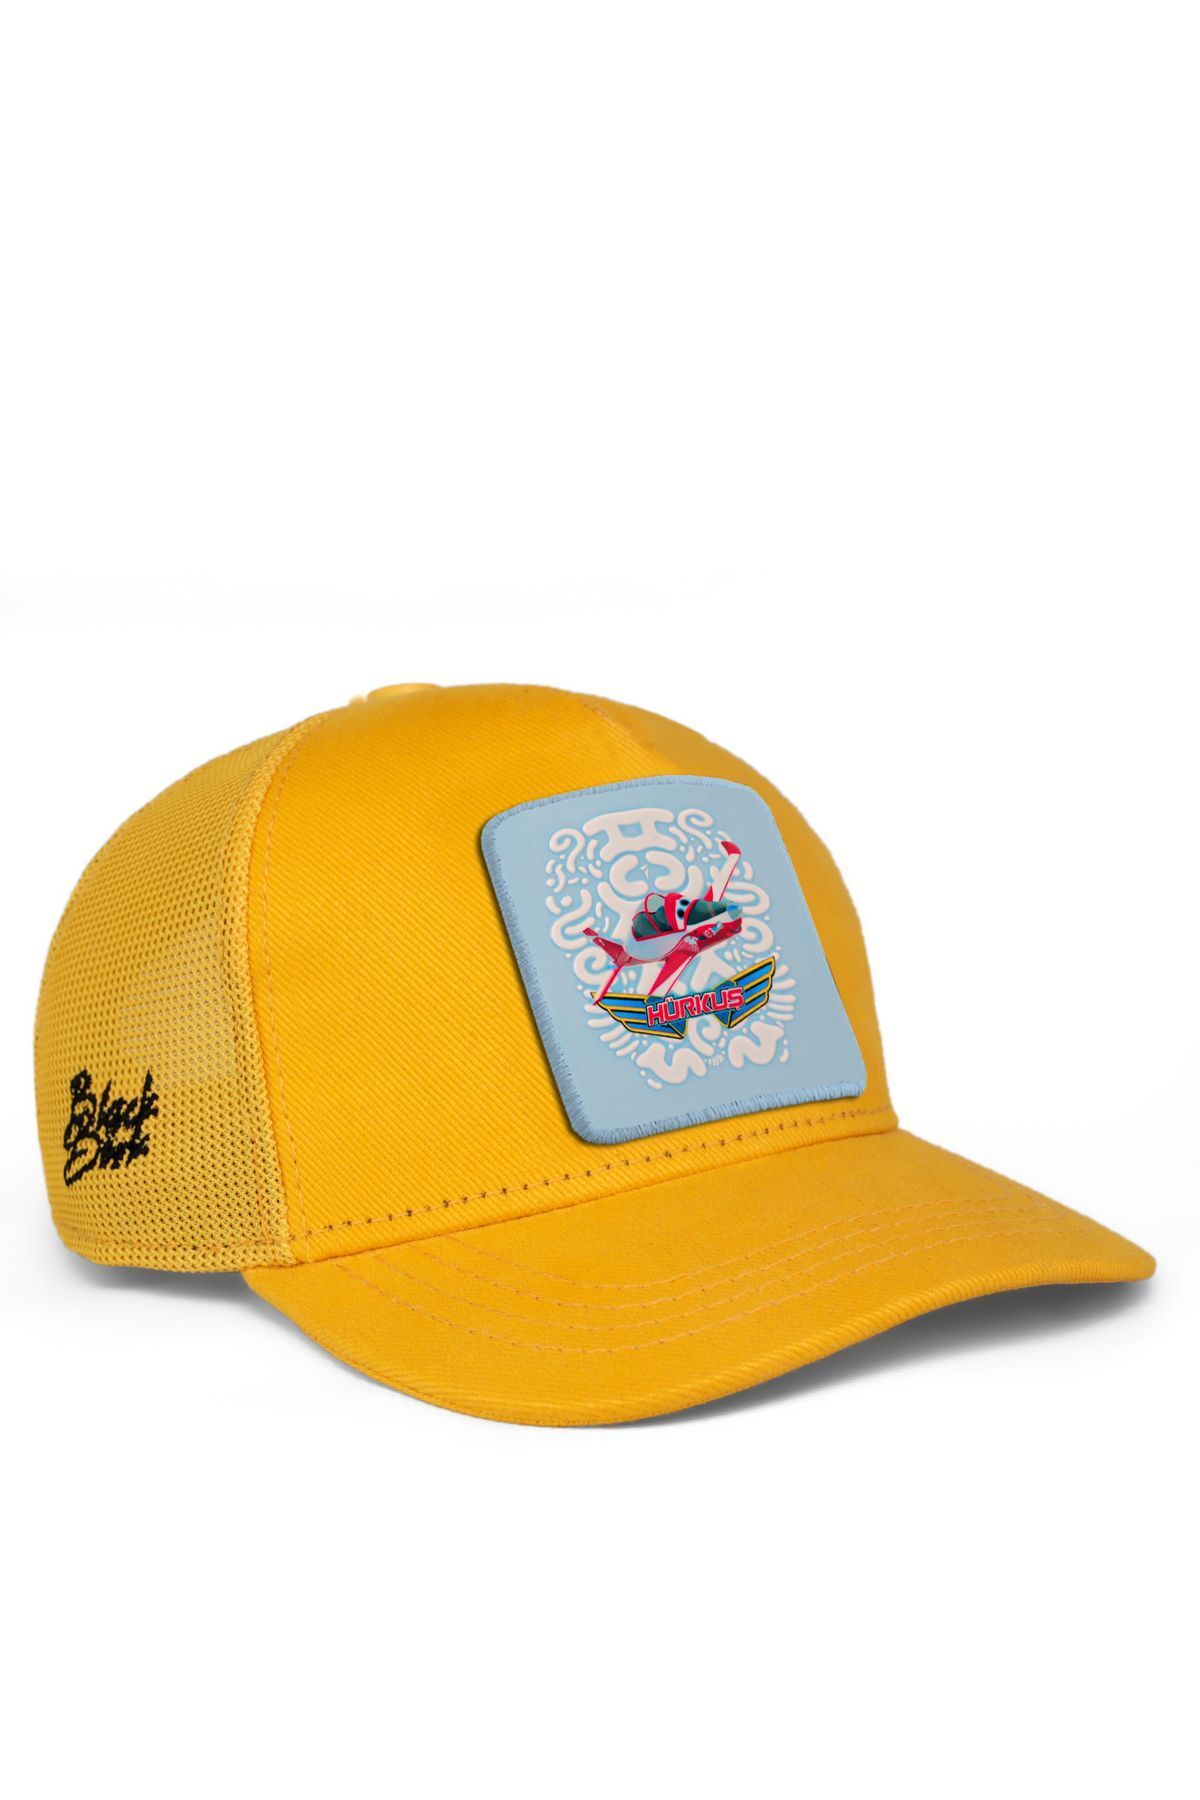 BlackBörk V1 Trucker Bulut Hürkuş Lisanlı Sarı Çocuk Şapka